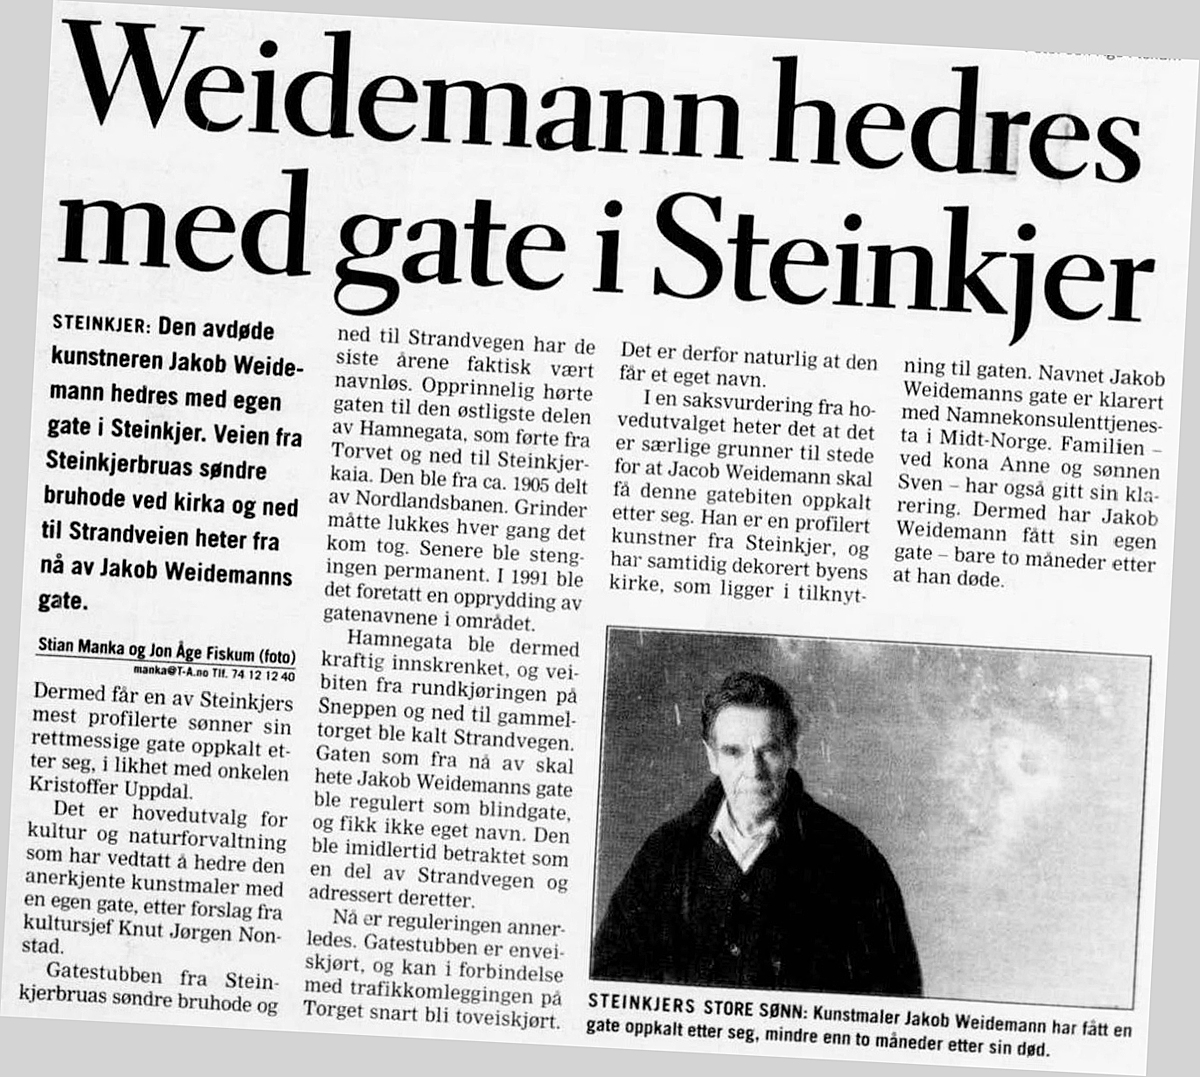 Jakob Weidemanns gate opprettes